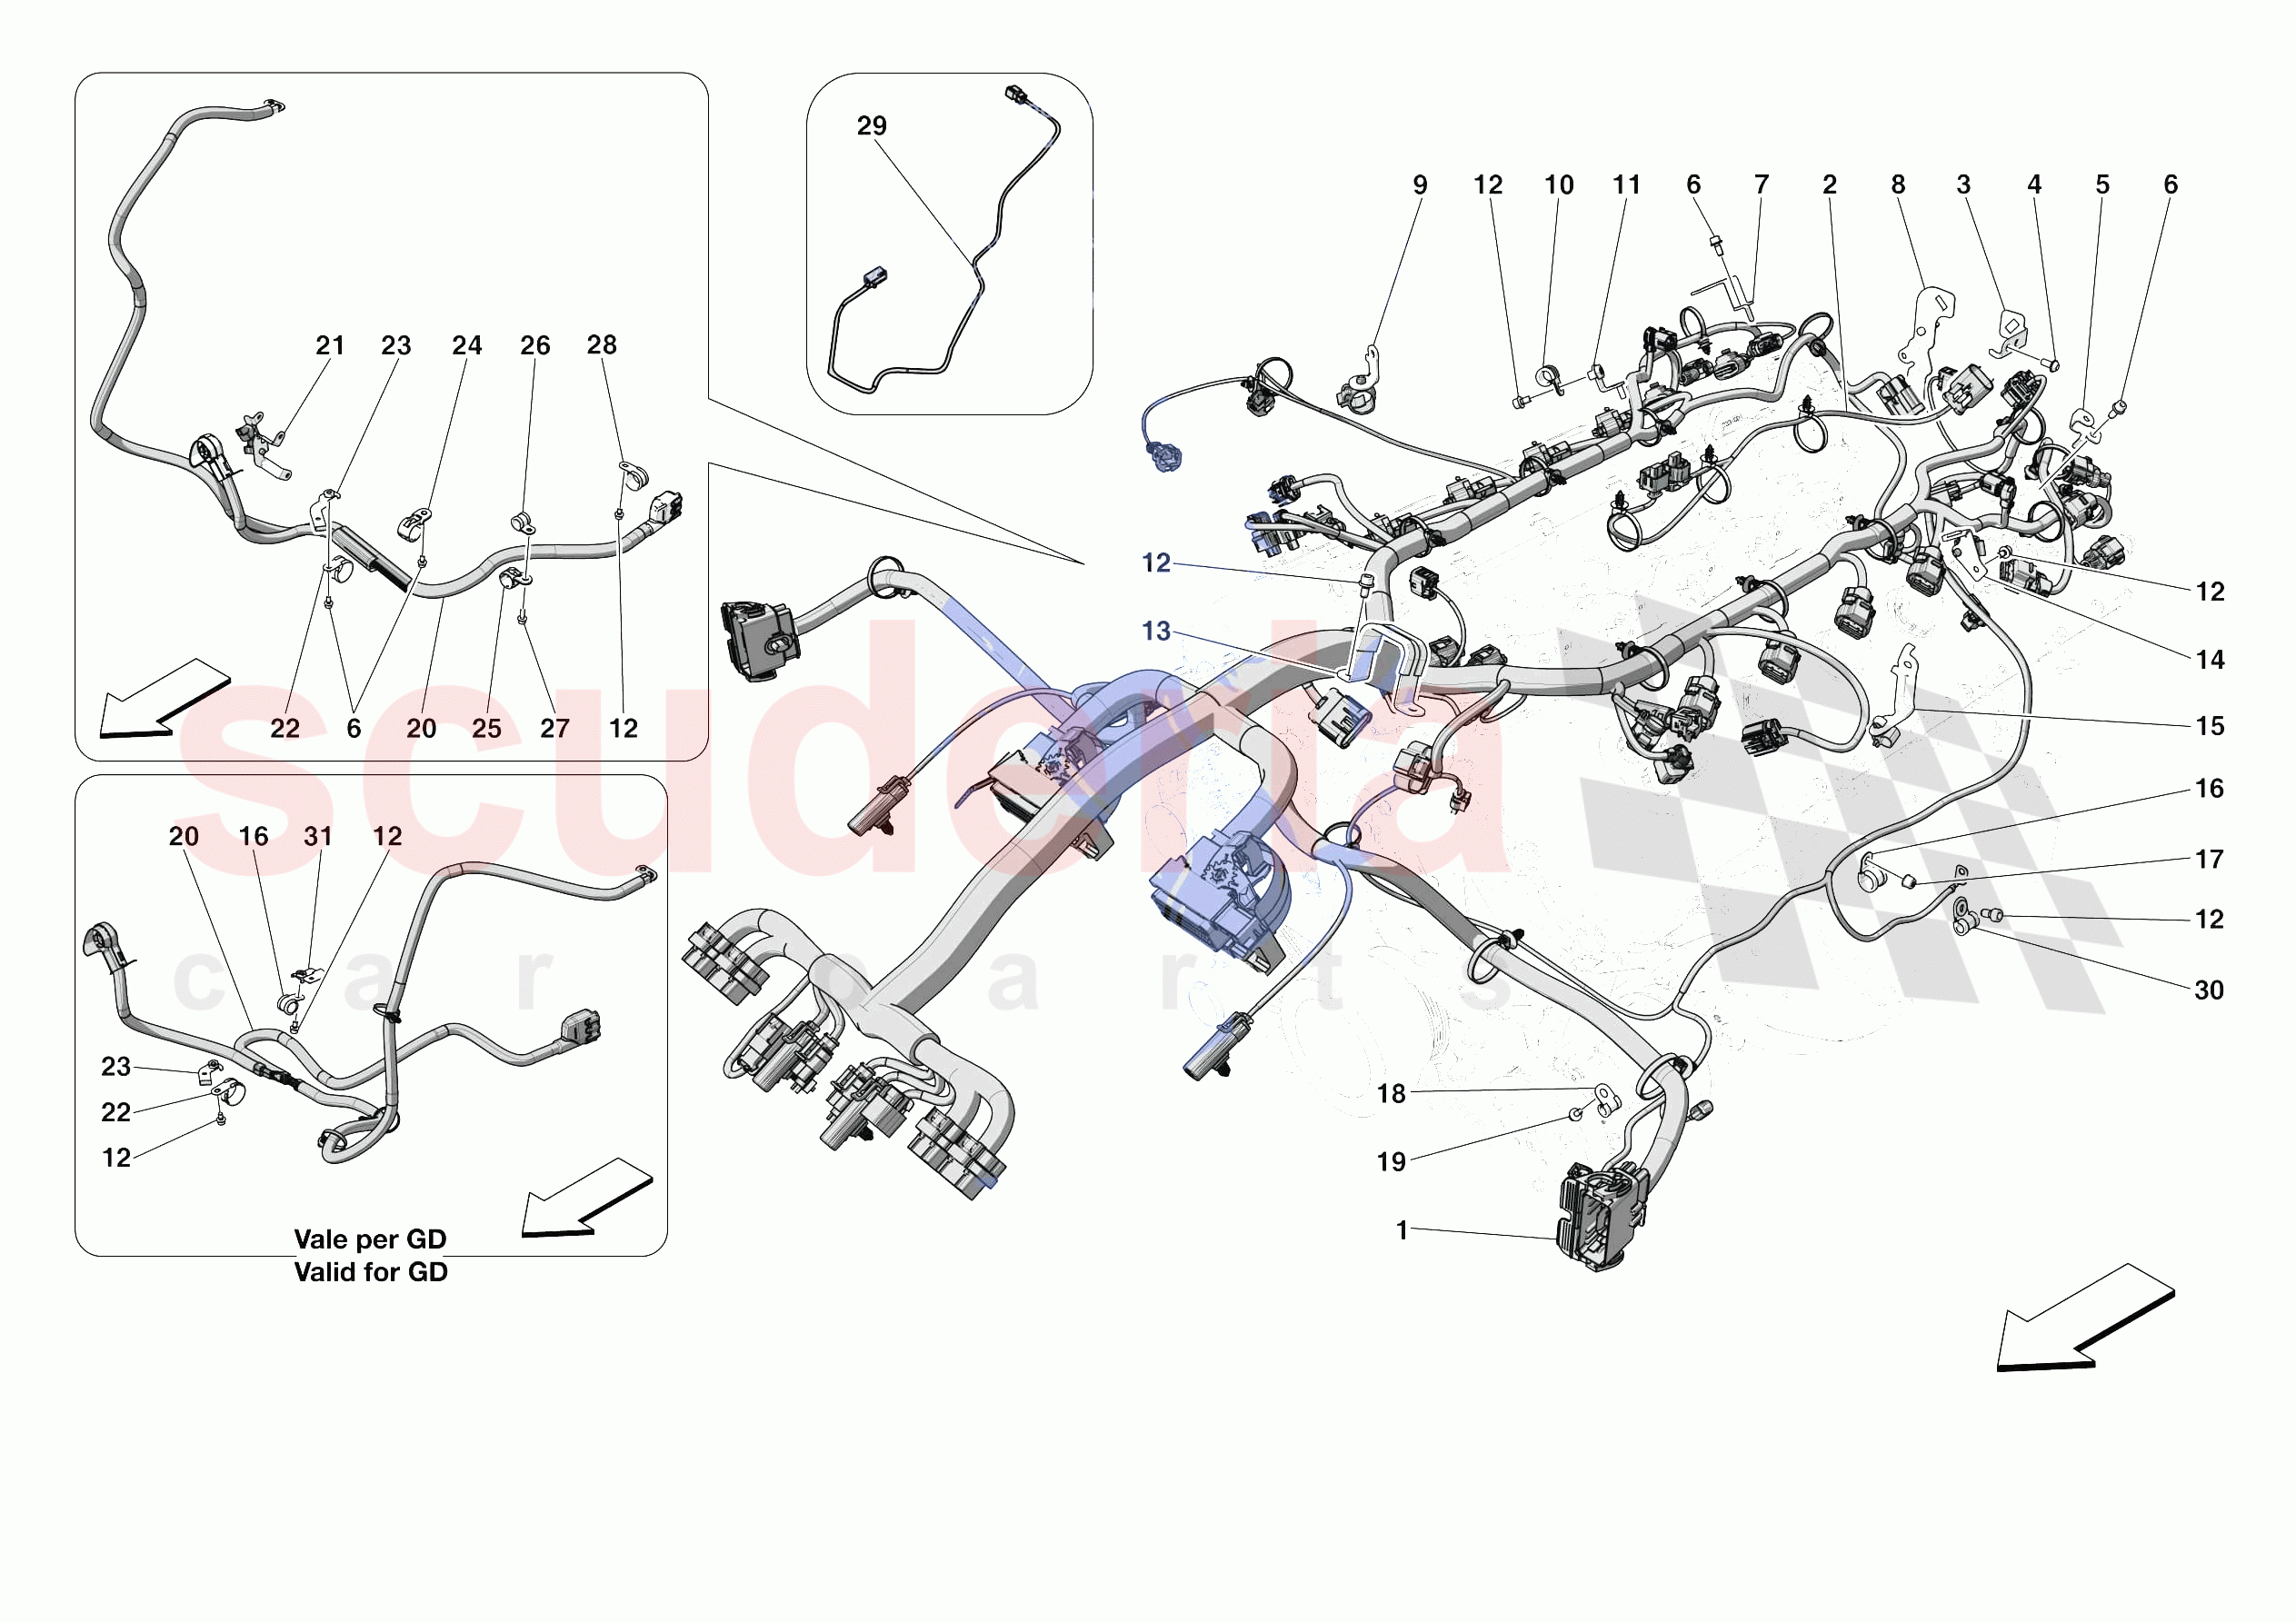 ENGINE ELECTRICAL SYSTEM of Ferrari Ferrari 812 Competizione A Europe